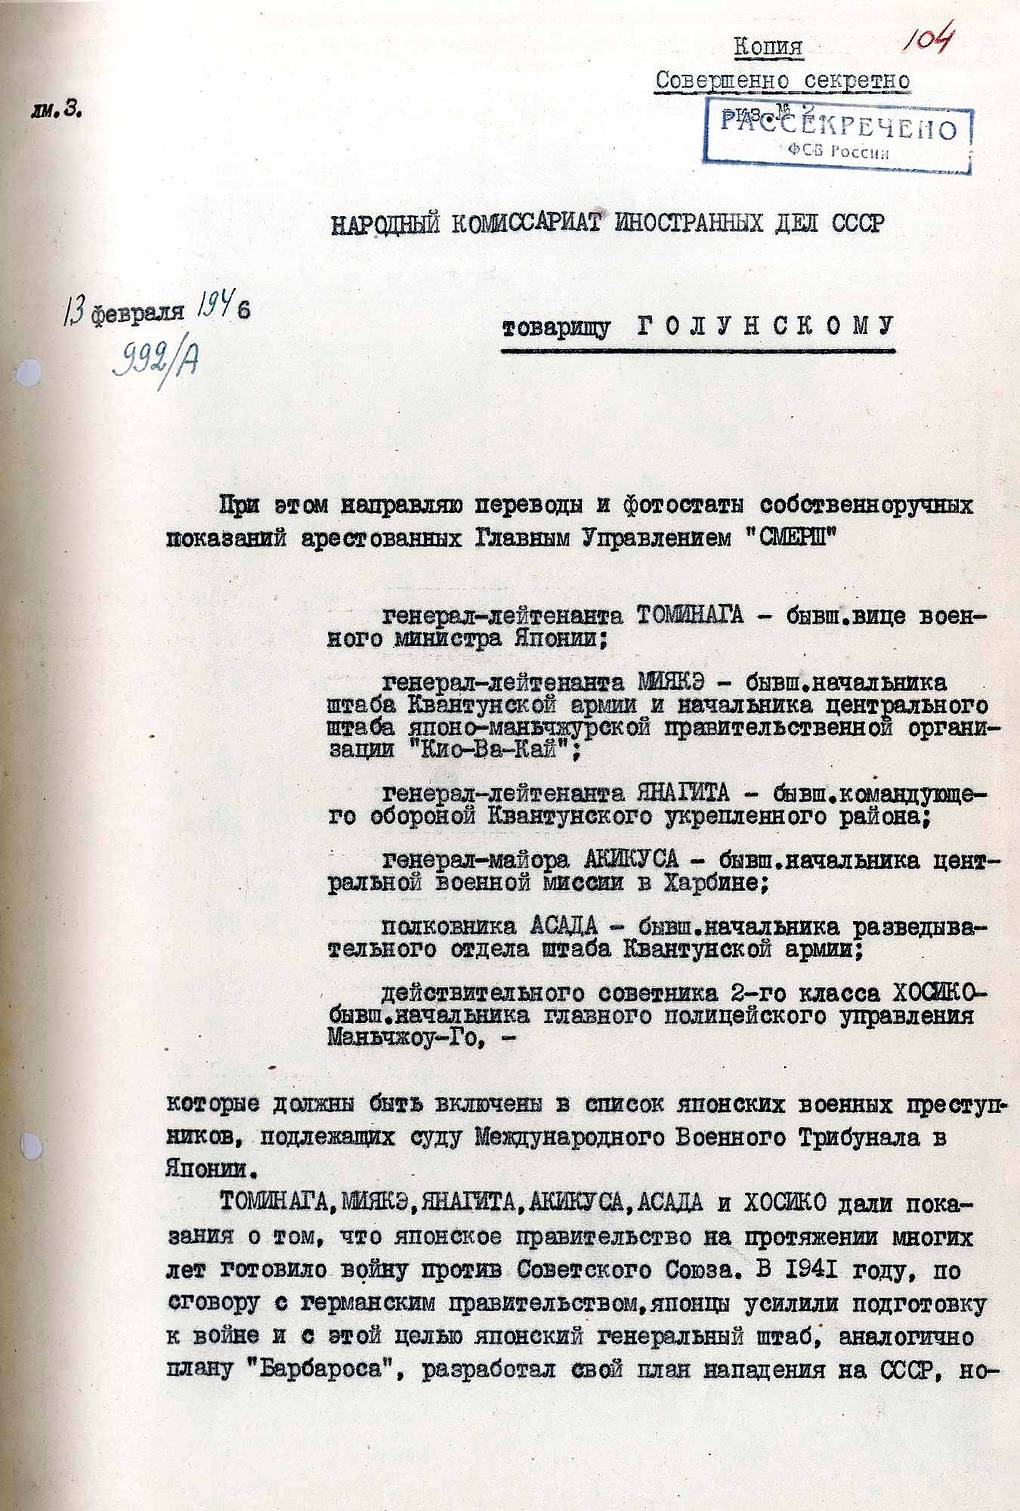 ФСБ рассекретила показания японских генералов о планах нападения на СССР